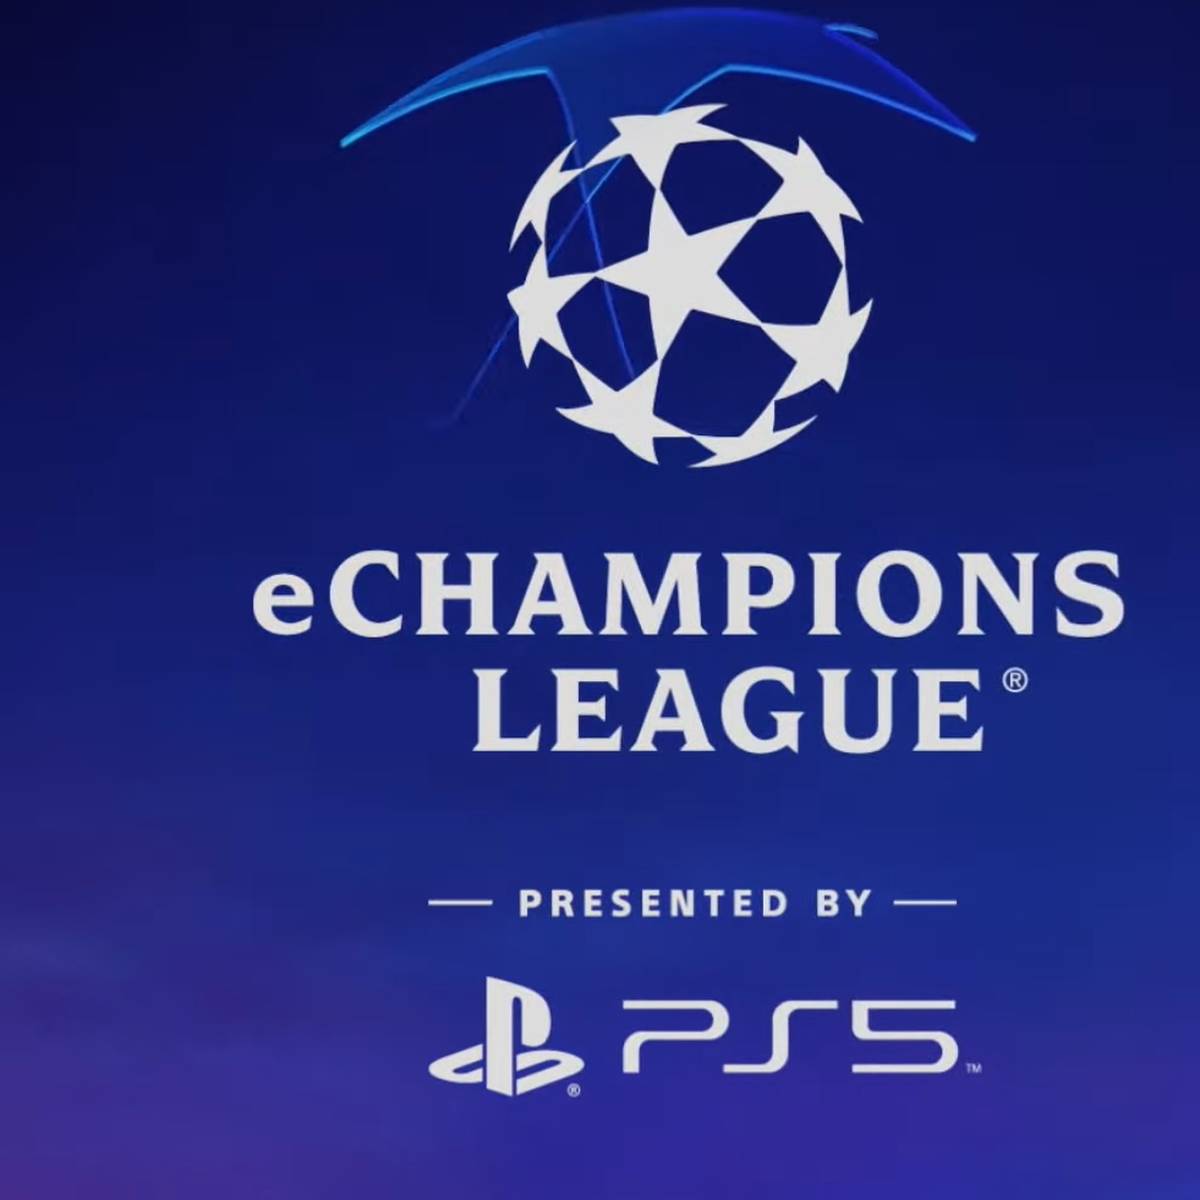 Noch vor dem großen Finale Champions League Finale zwischen dem FC Liverpool und Real Madrid kommt es am heutigen Freitag zum Endspiel in der eChampions League in FIFA 22. Wer hat das Zeug zum Titel?